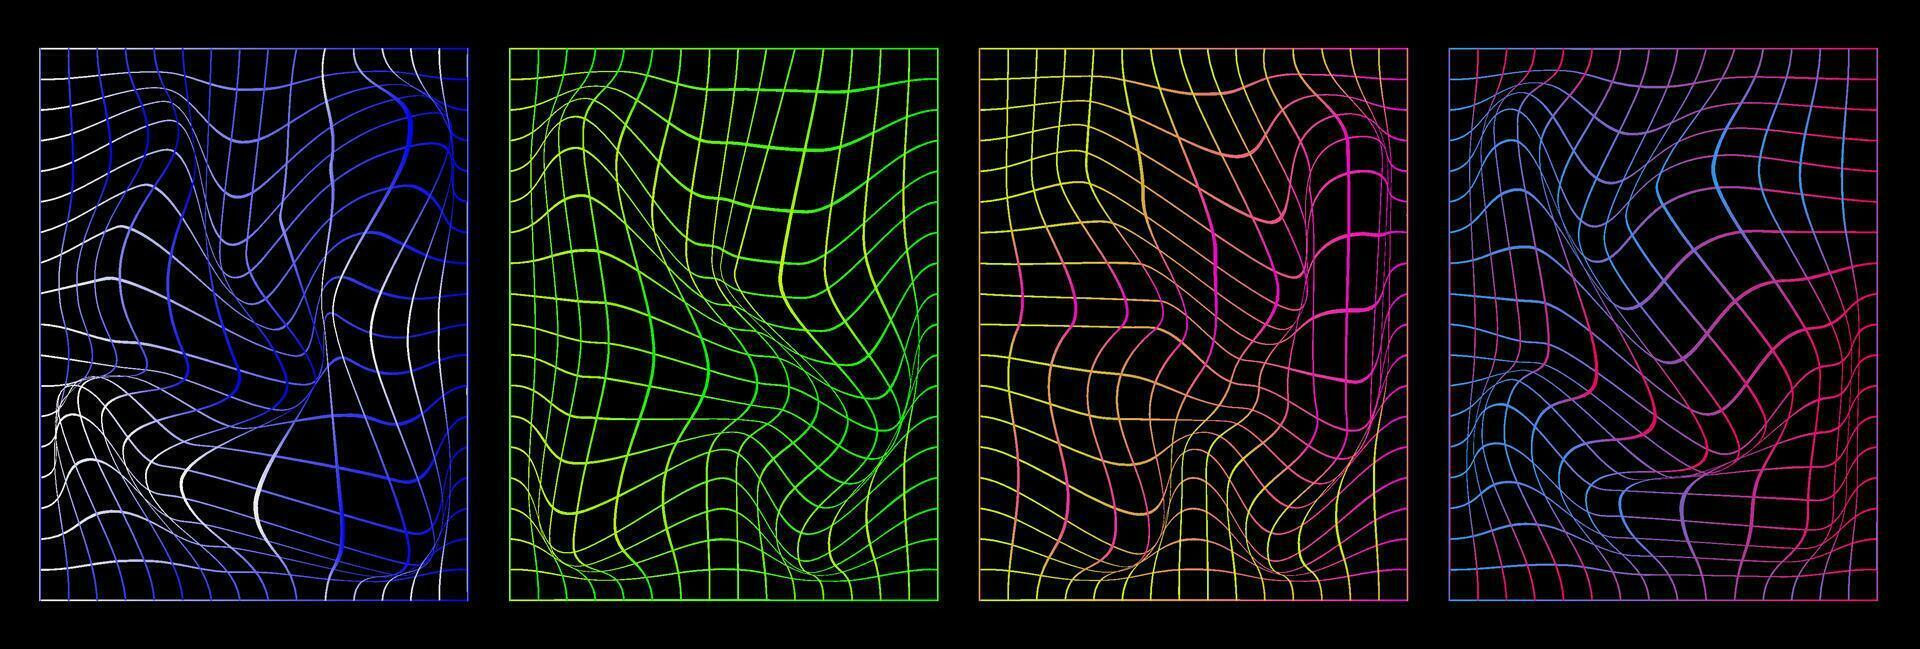 uppsättning av förvrängd vertikal neon rutnät mönster. trendig retro 1980-talet, 2000-talet stil. abstrakt affischer. cyberpunk element i trendig psychedelic rave stil. vektor